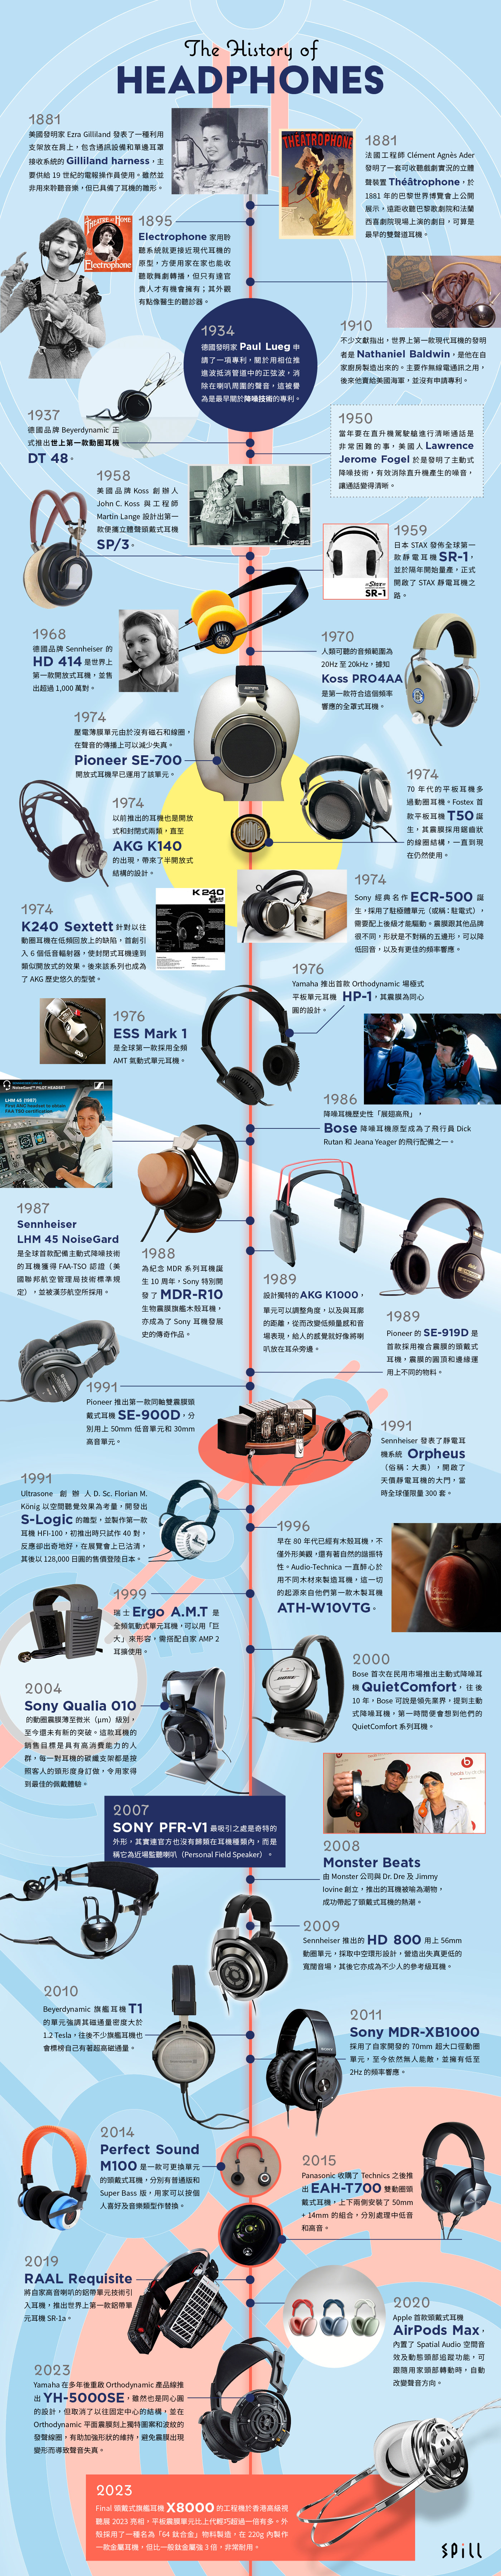 美國發明家愛迪生於 1877 年發明了留聲機，幾乎同期耳機的雛形出現了。在 19 世紀 90 年代，就有接近現代耳機的原型誕生。耳機的歷史到現在已經有超過 100 多年，直至 20 世紀 70 年代，更可說是黃金時期，平板單元、壓電單元、駐極體單元、AMT 氣動式單元等技術先後出現。今次就回顧一下頭戴式耳機的發展歷史。